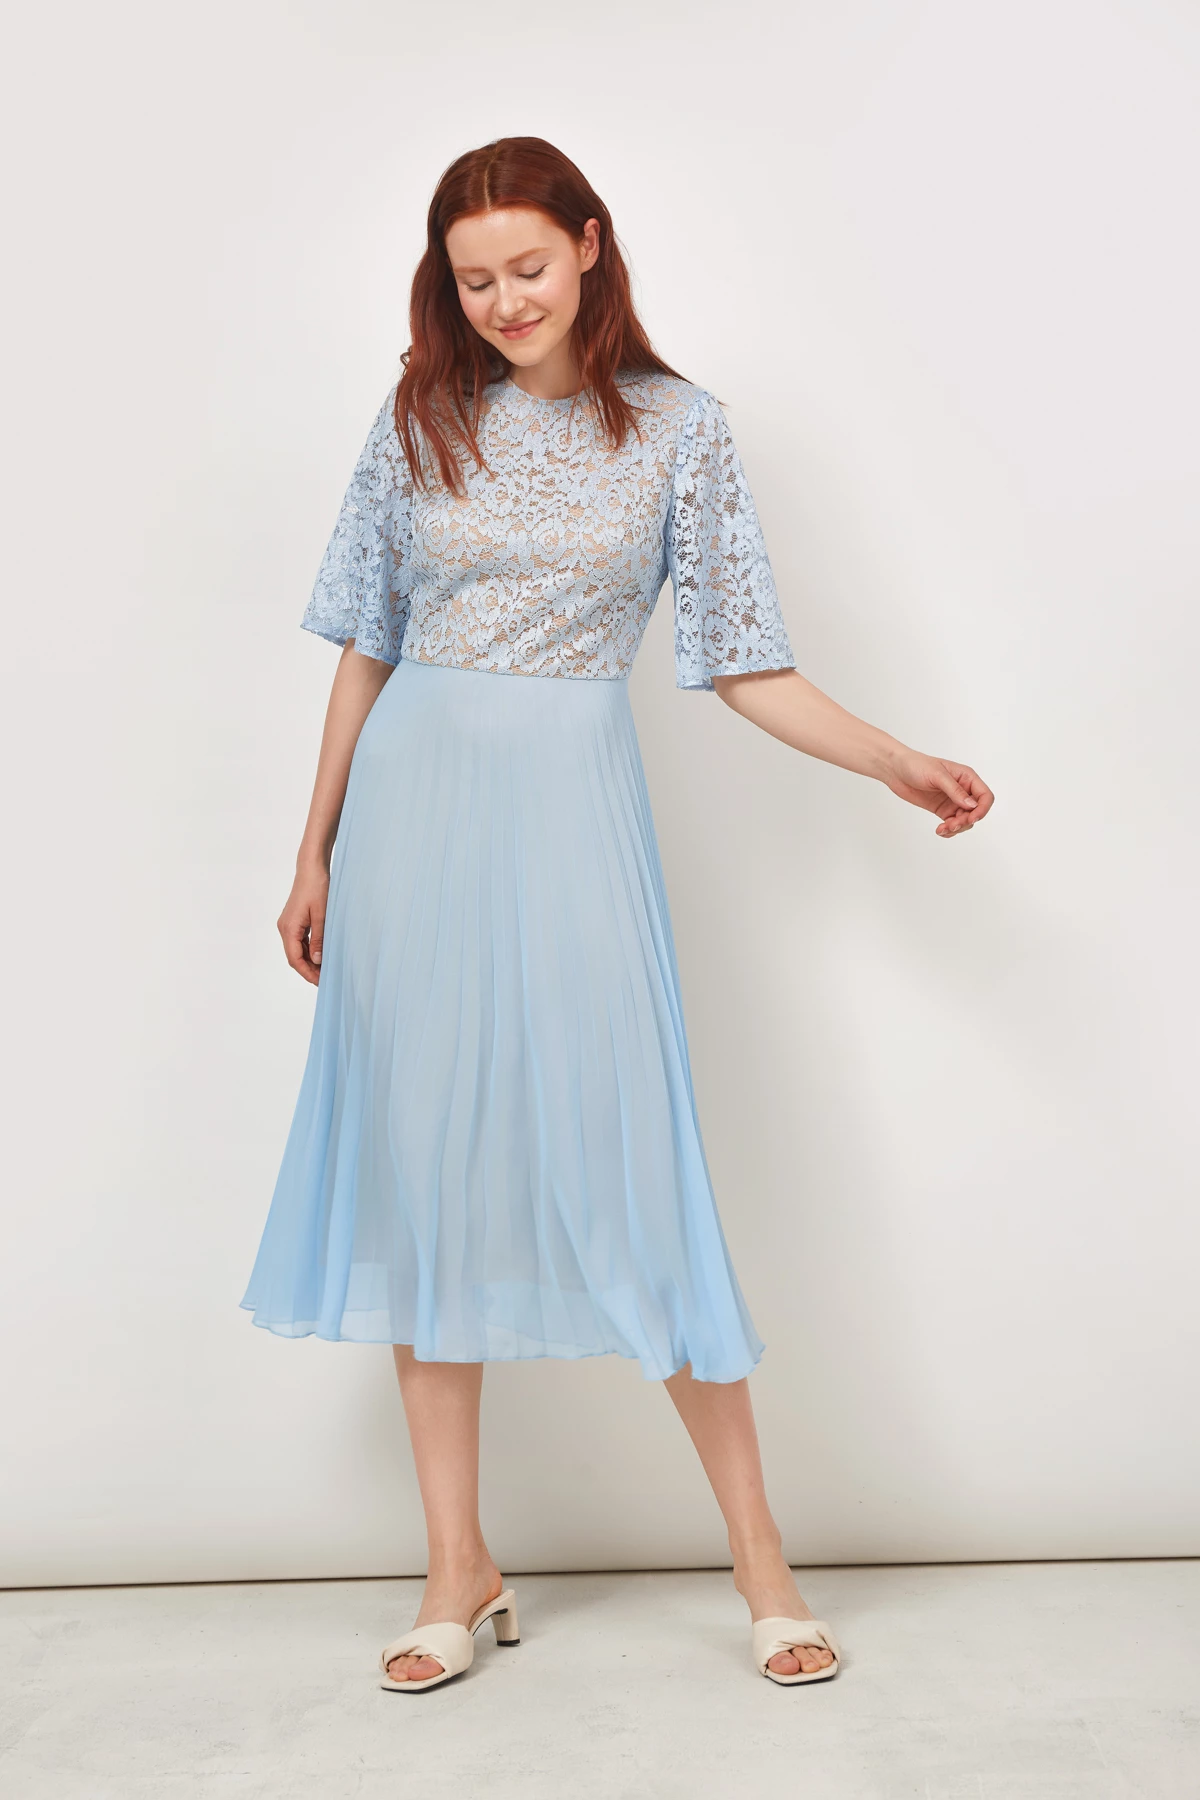 Midi dress in blue lace and chiffon , photo 3